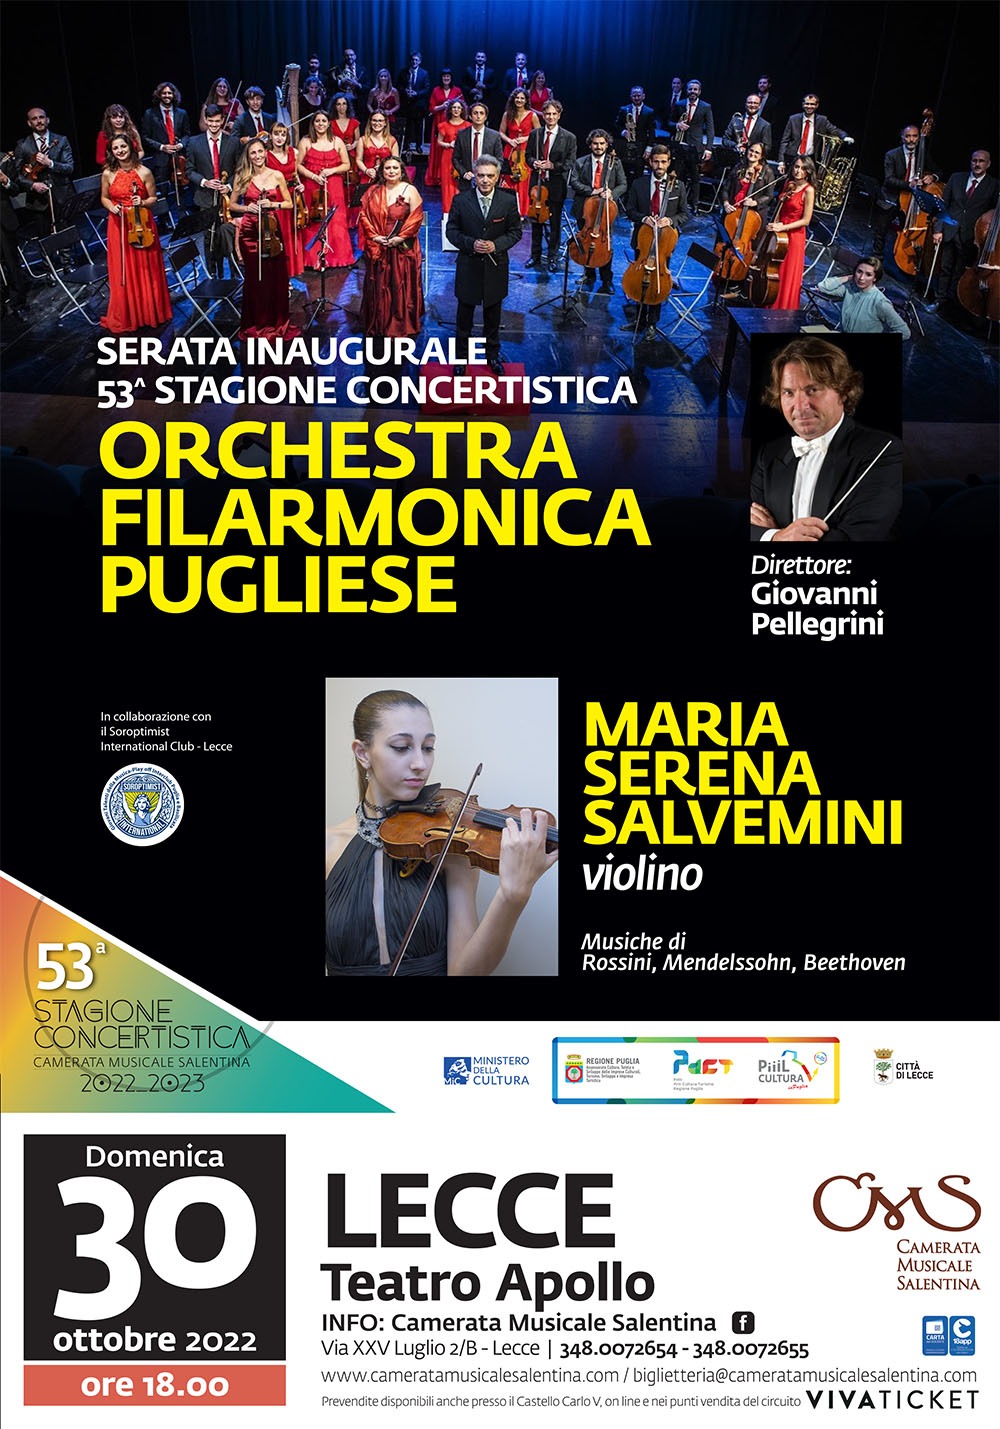 Lecce, serata inaugurale 53^  stagione concertistica con la violinista Maria Serena Salvemini 